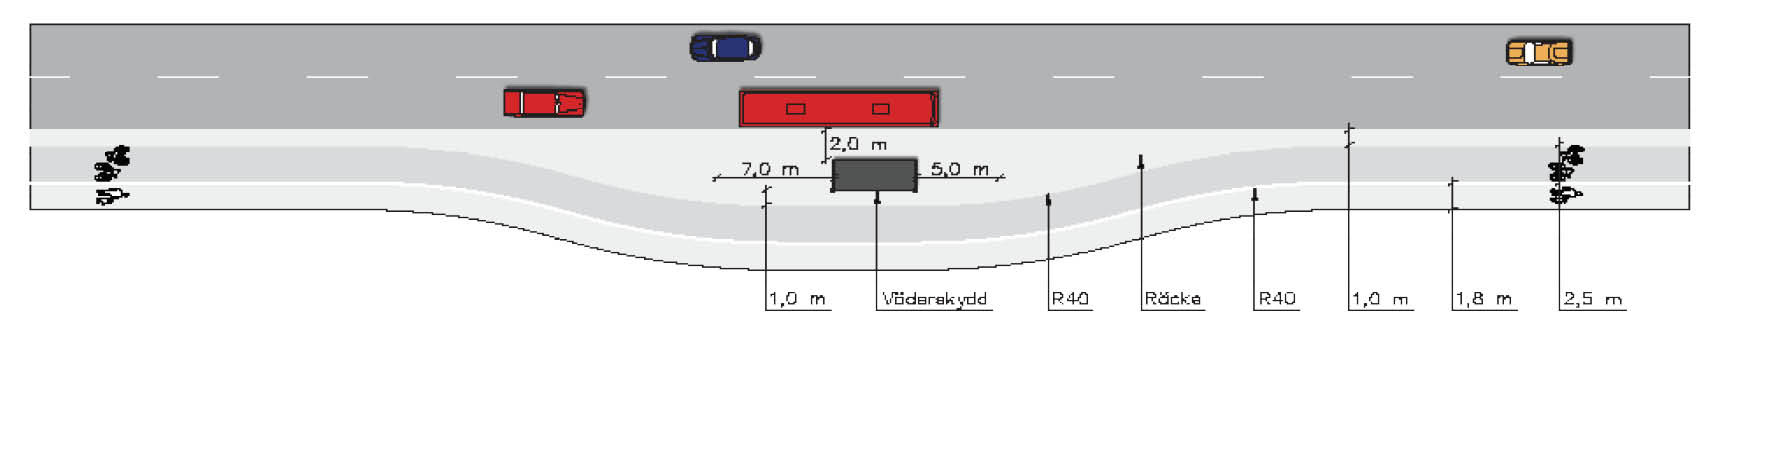 4. Planeringsprinciper Figur 11: Utformning vid fickhållplats 40 Figur 12: Utformning vid kantstenshållplats 41 och även förbättrad trafiksäkerhet, eftersom korsande trafik i tunnelmynningen kan